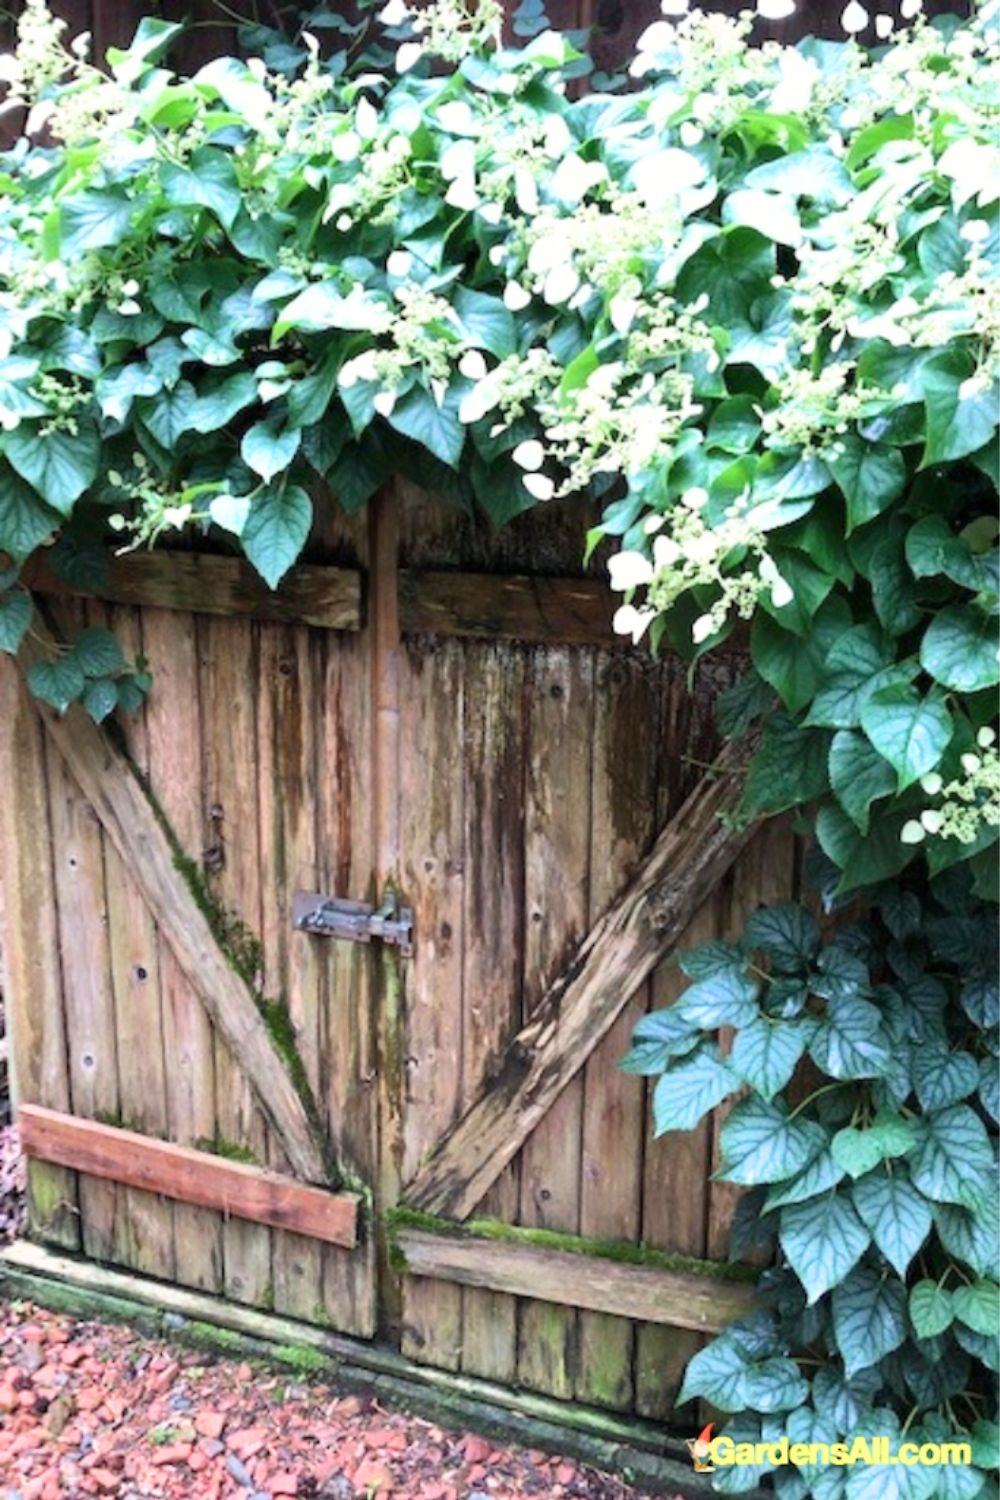 A climbing hydrangea over a wooden gate.